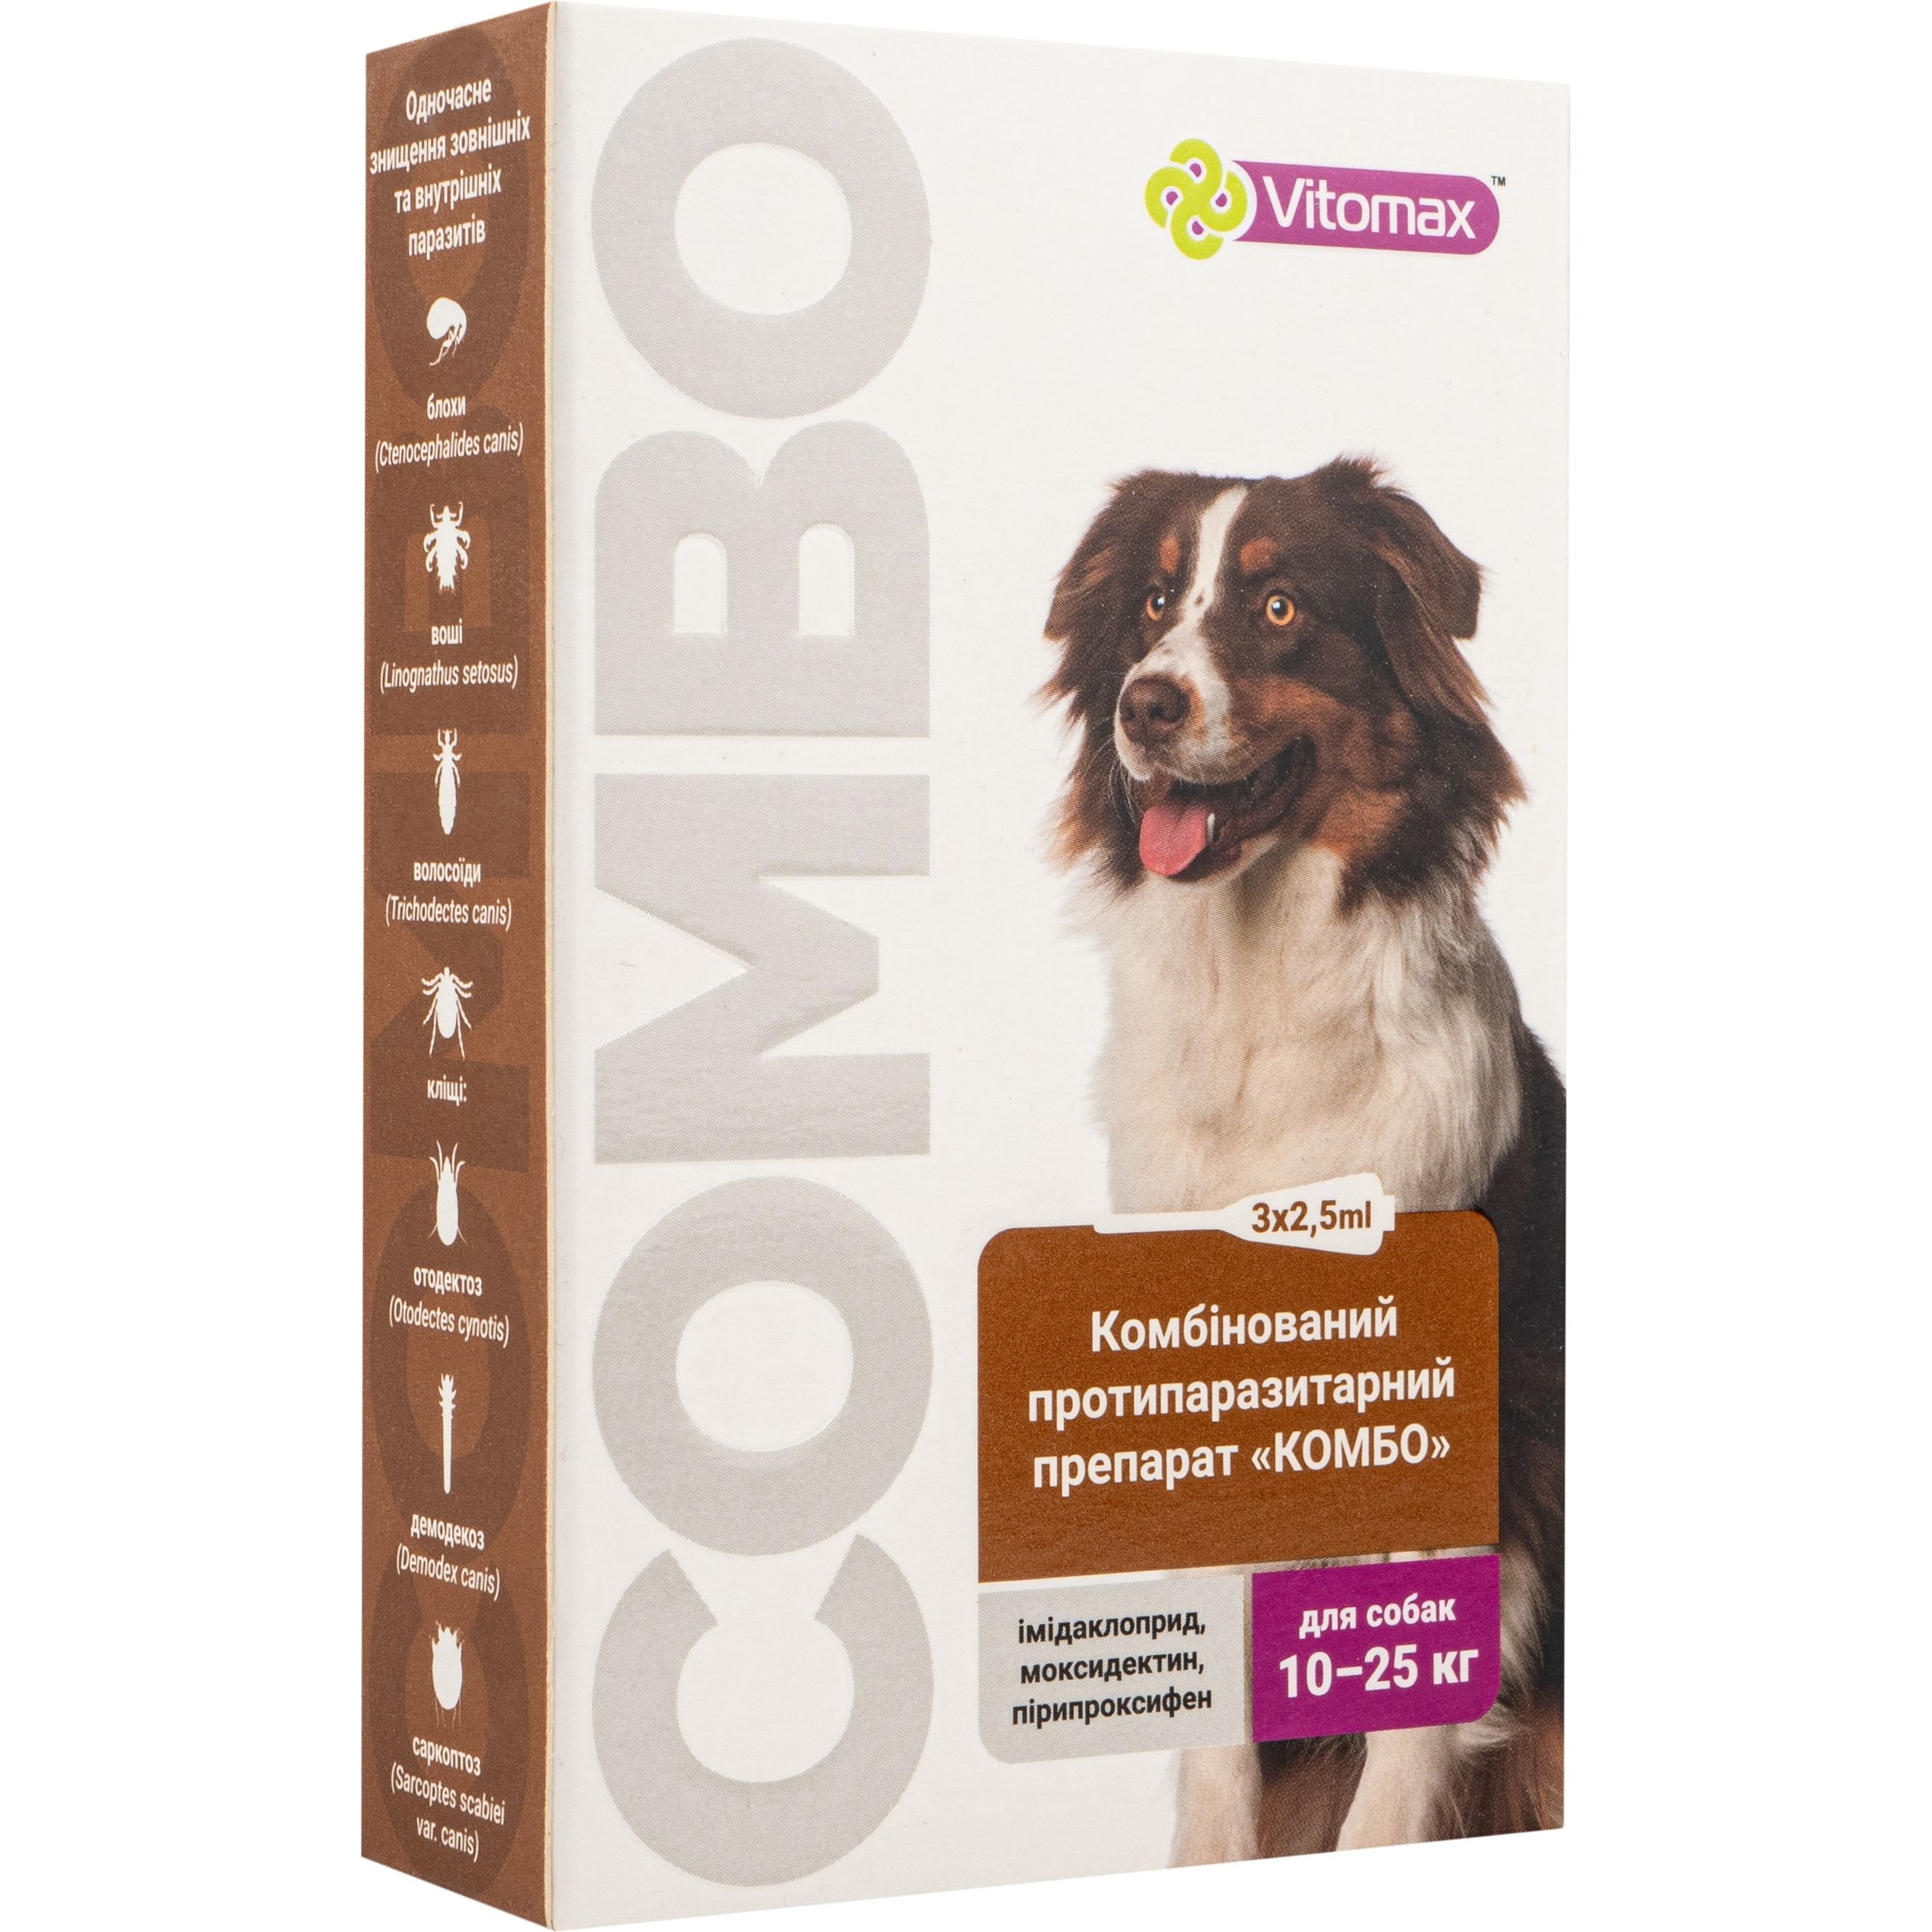 Краплі Vitomax комбо для собак 10 - 25 кг, 2.5 мл, 3 шт. - фото 1